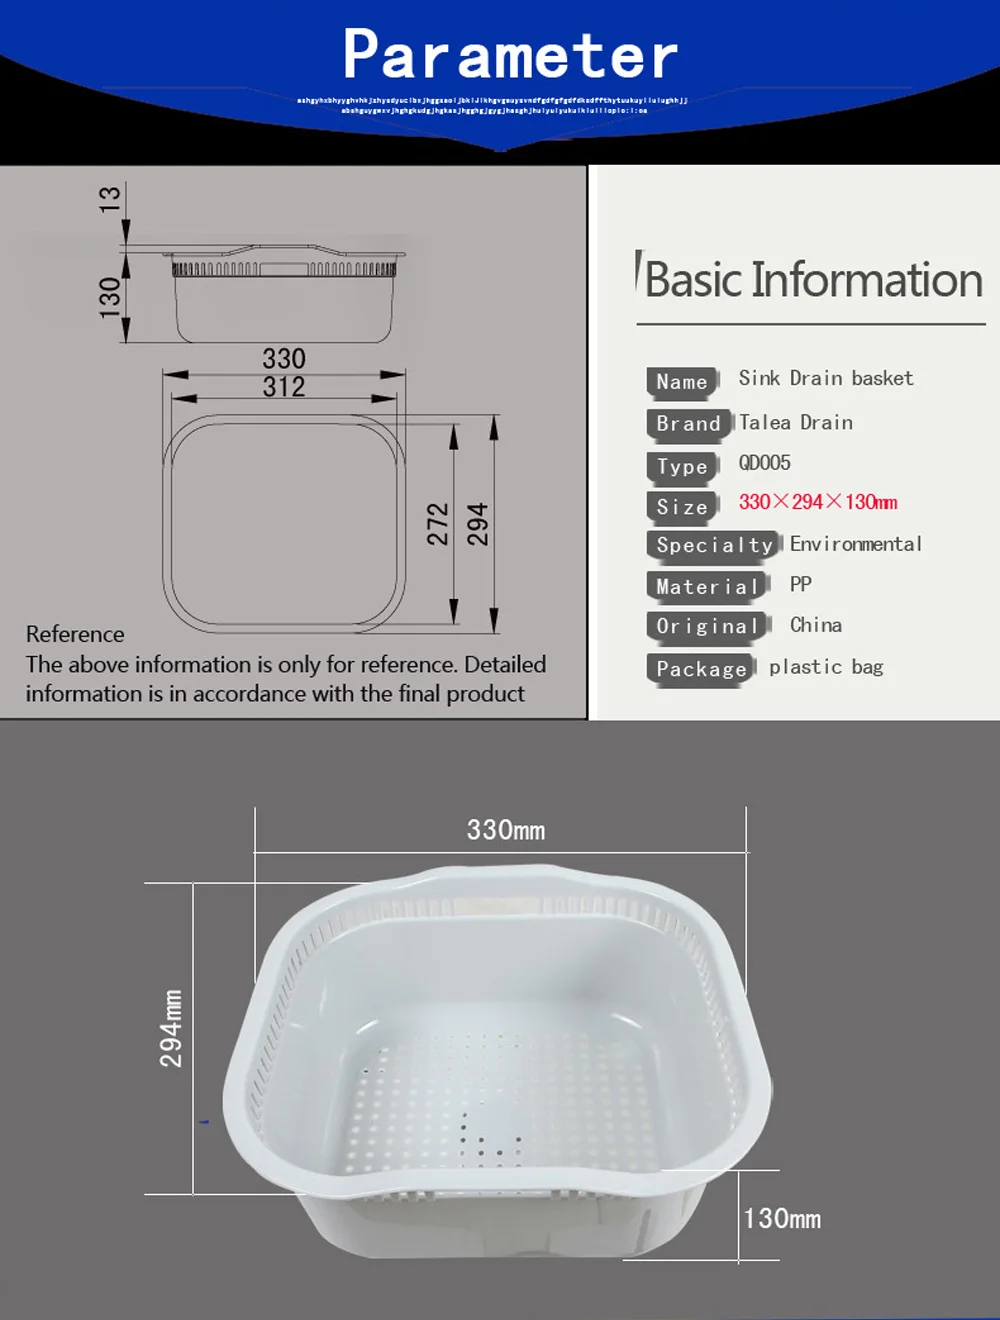 Talea детали кухонной раковины раковина Слива пластиковая корзина PP Раковина baeket кухонный поднос сушилка для посуды DryingQD005